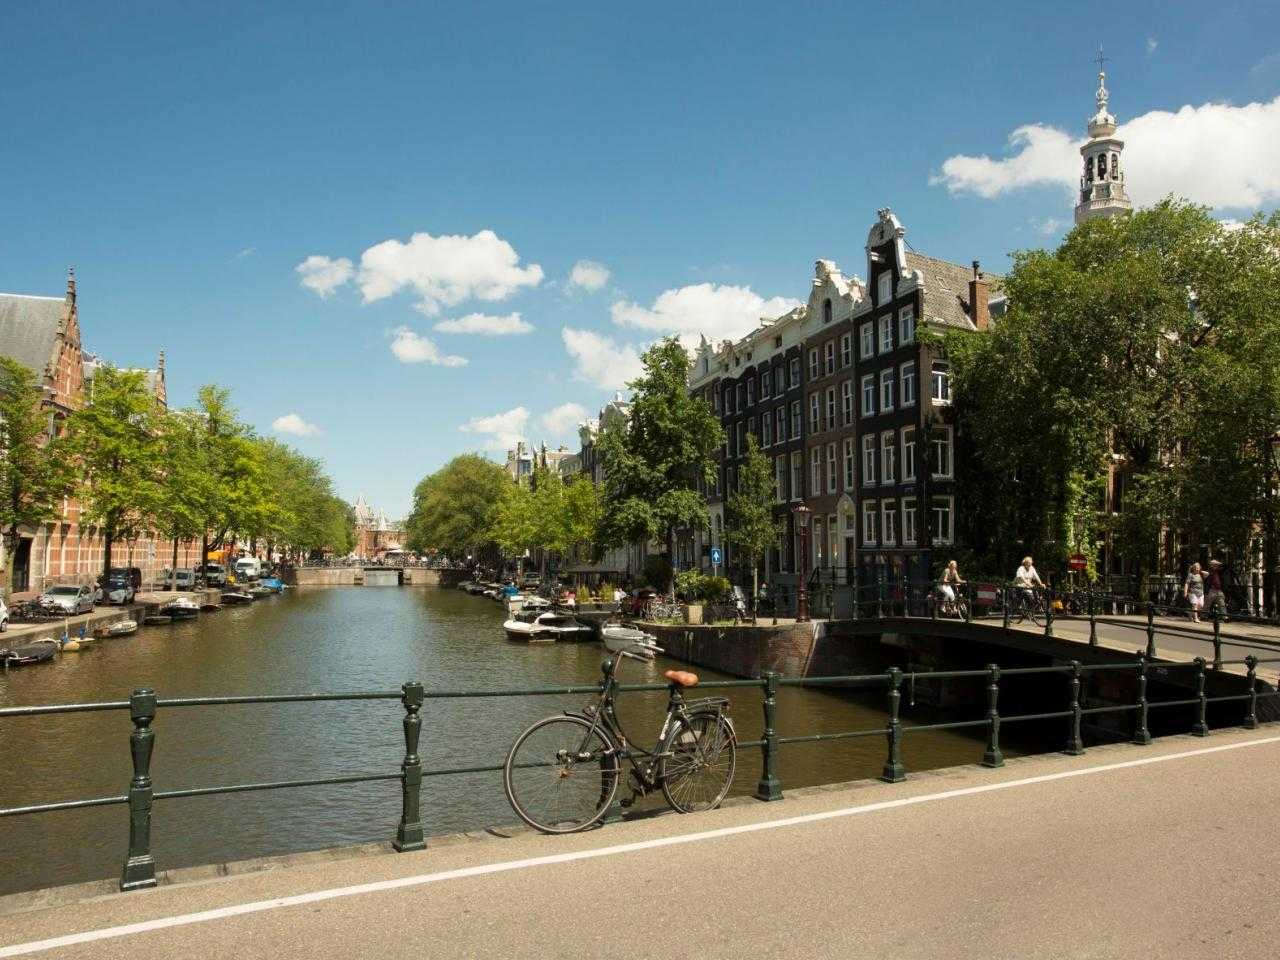 Een van de grachten van Amsterdam gezien vanaf een brug